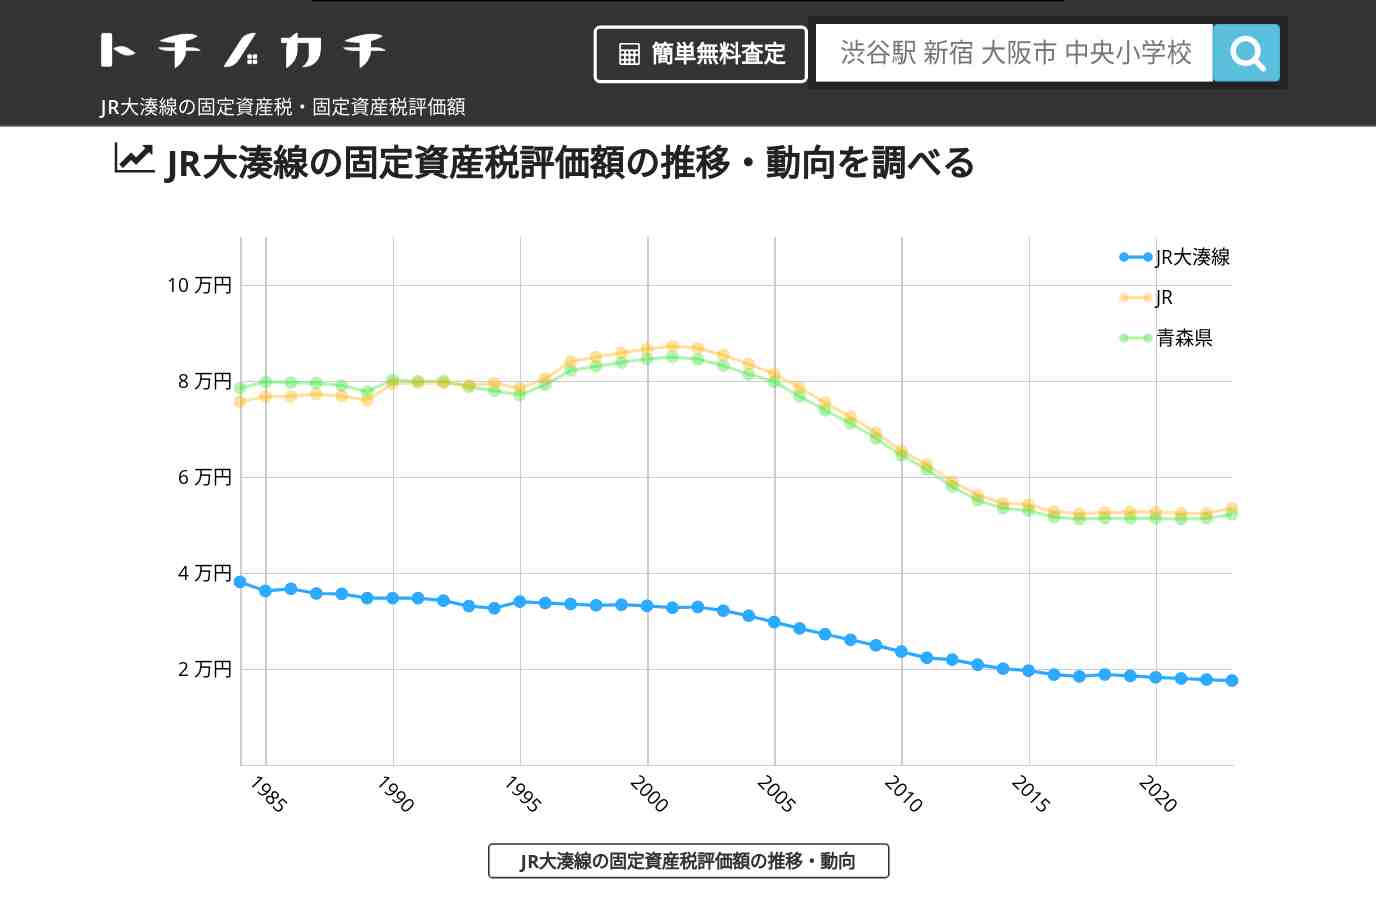 JR大湊線(JR)の固定資産税・固定資産税評価額 | トチノカチ